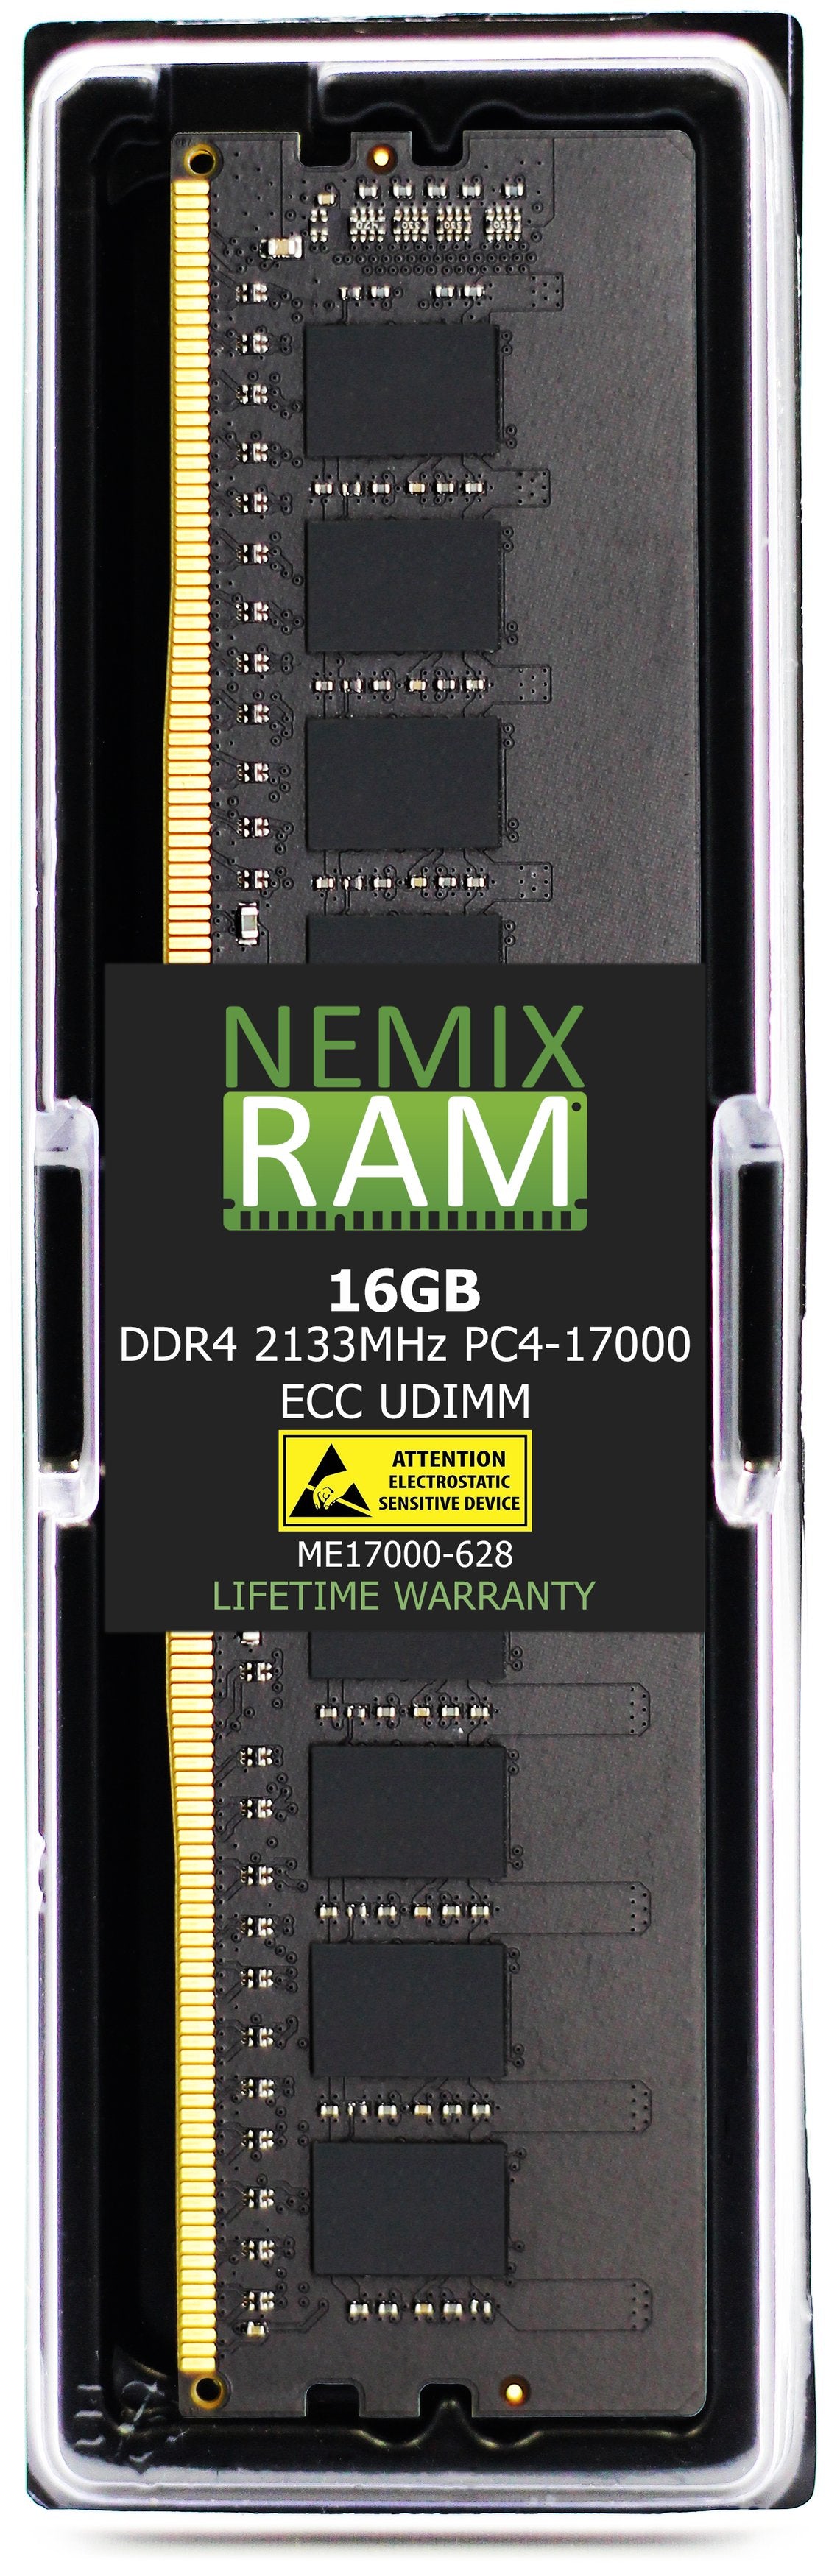 16GB DDR4 2133MHZ PC4-17000 ECC UDIMM Compatible with Supermicro MEM-DR416L-CL01-EU21